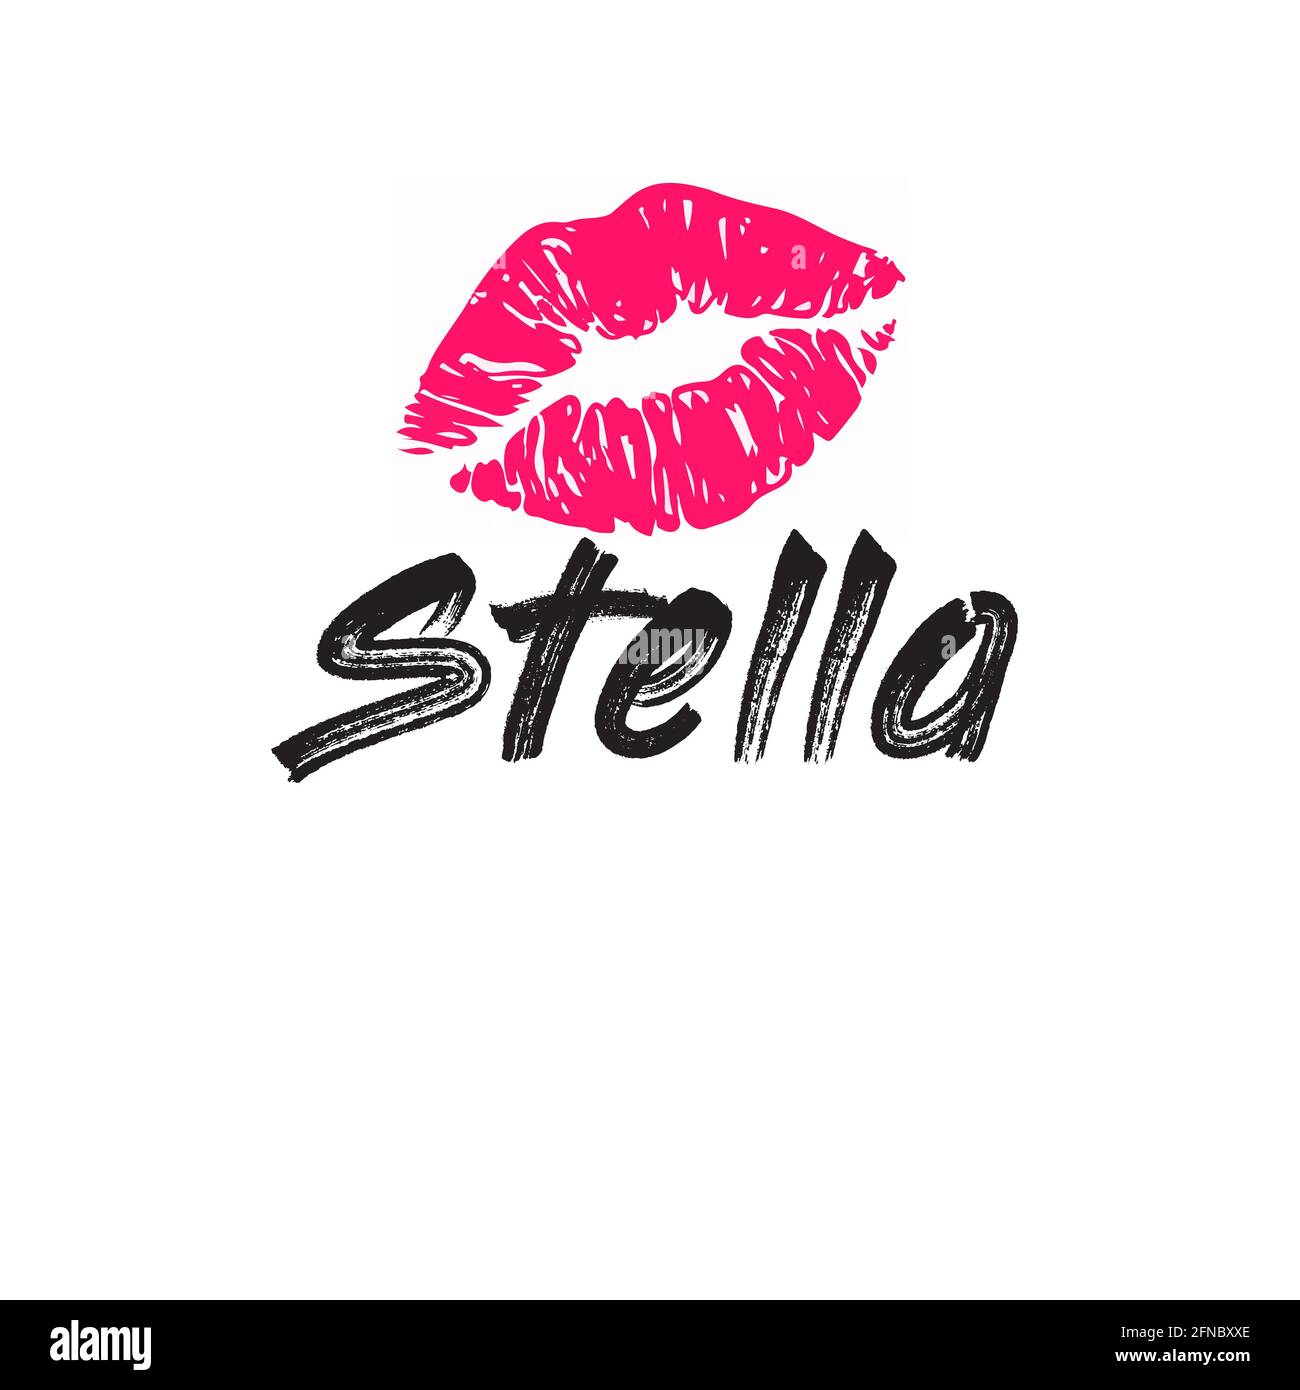 stella girl name Stock Photo